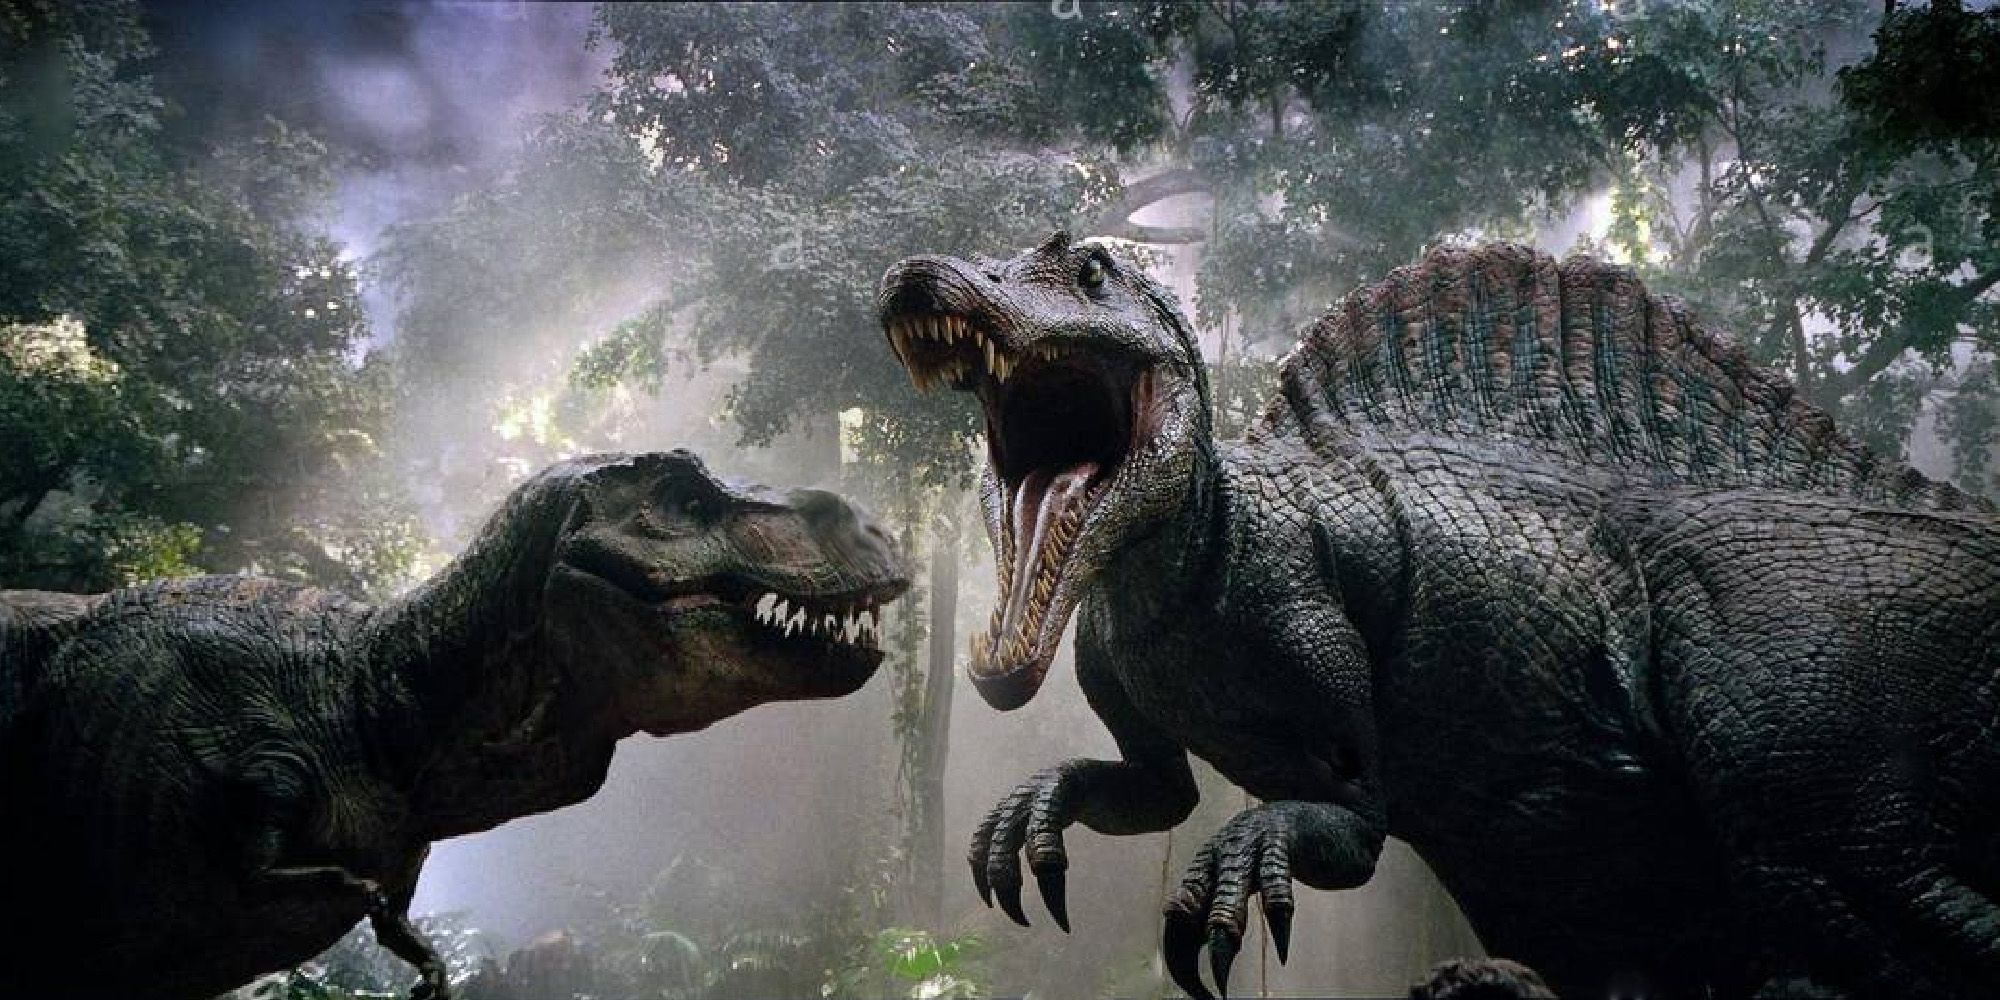 Spinosaurus vs. T-Rex from Jurassic Park III